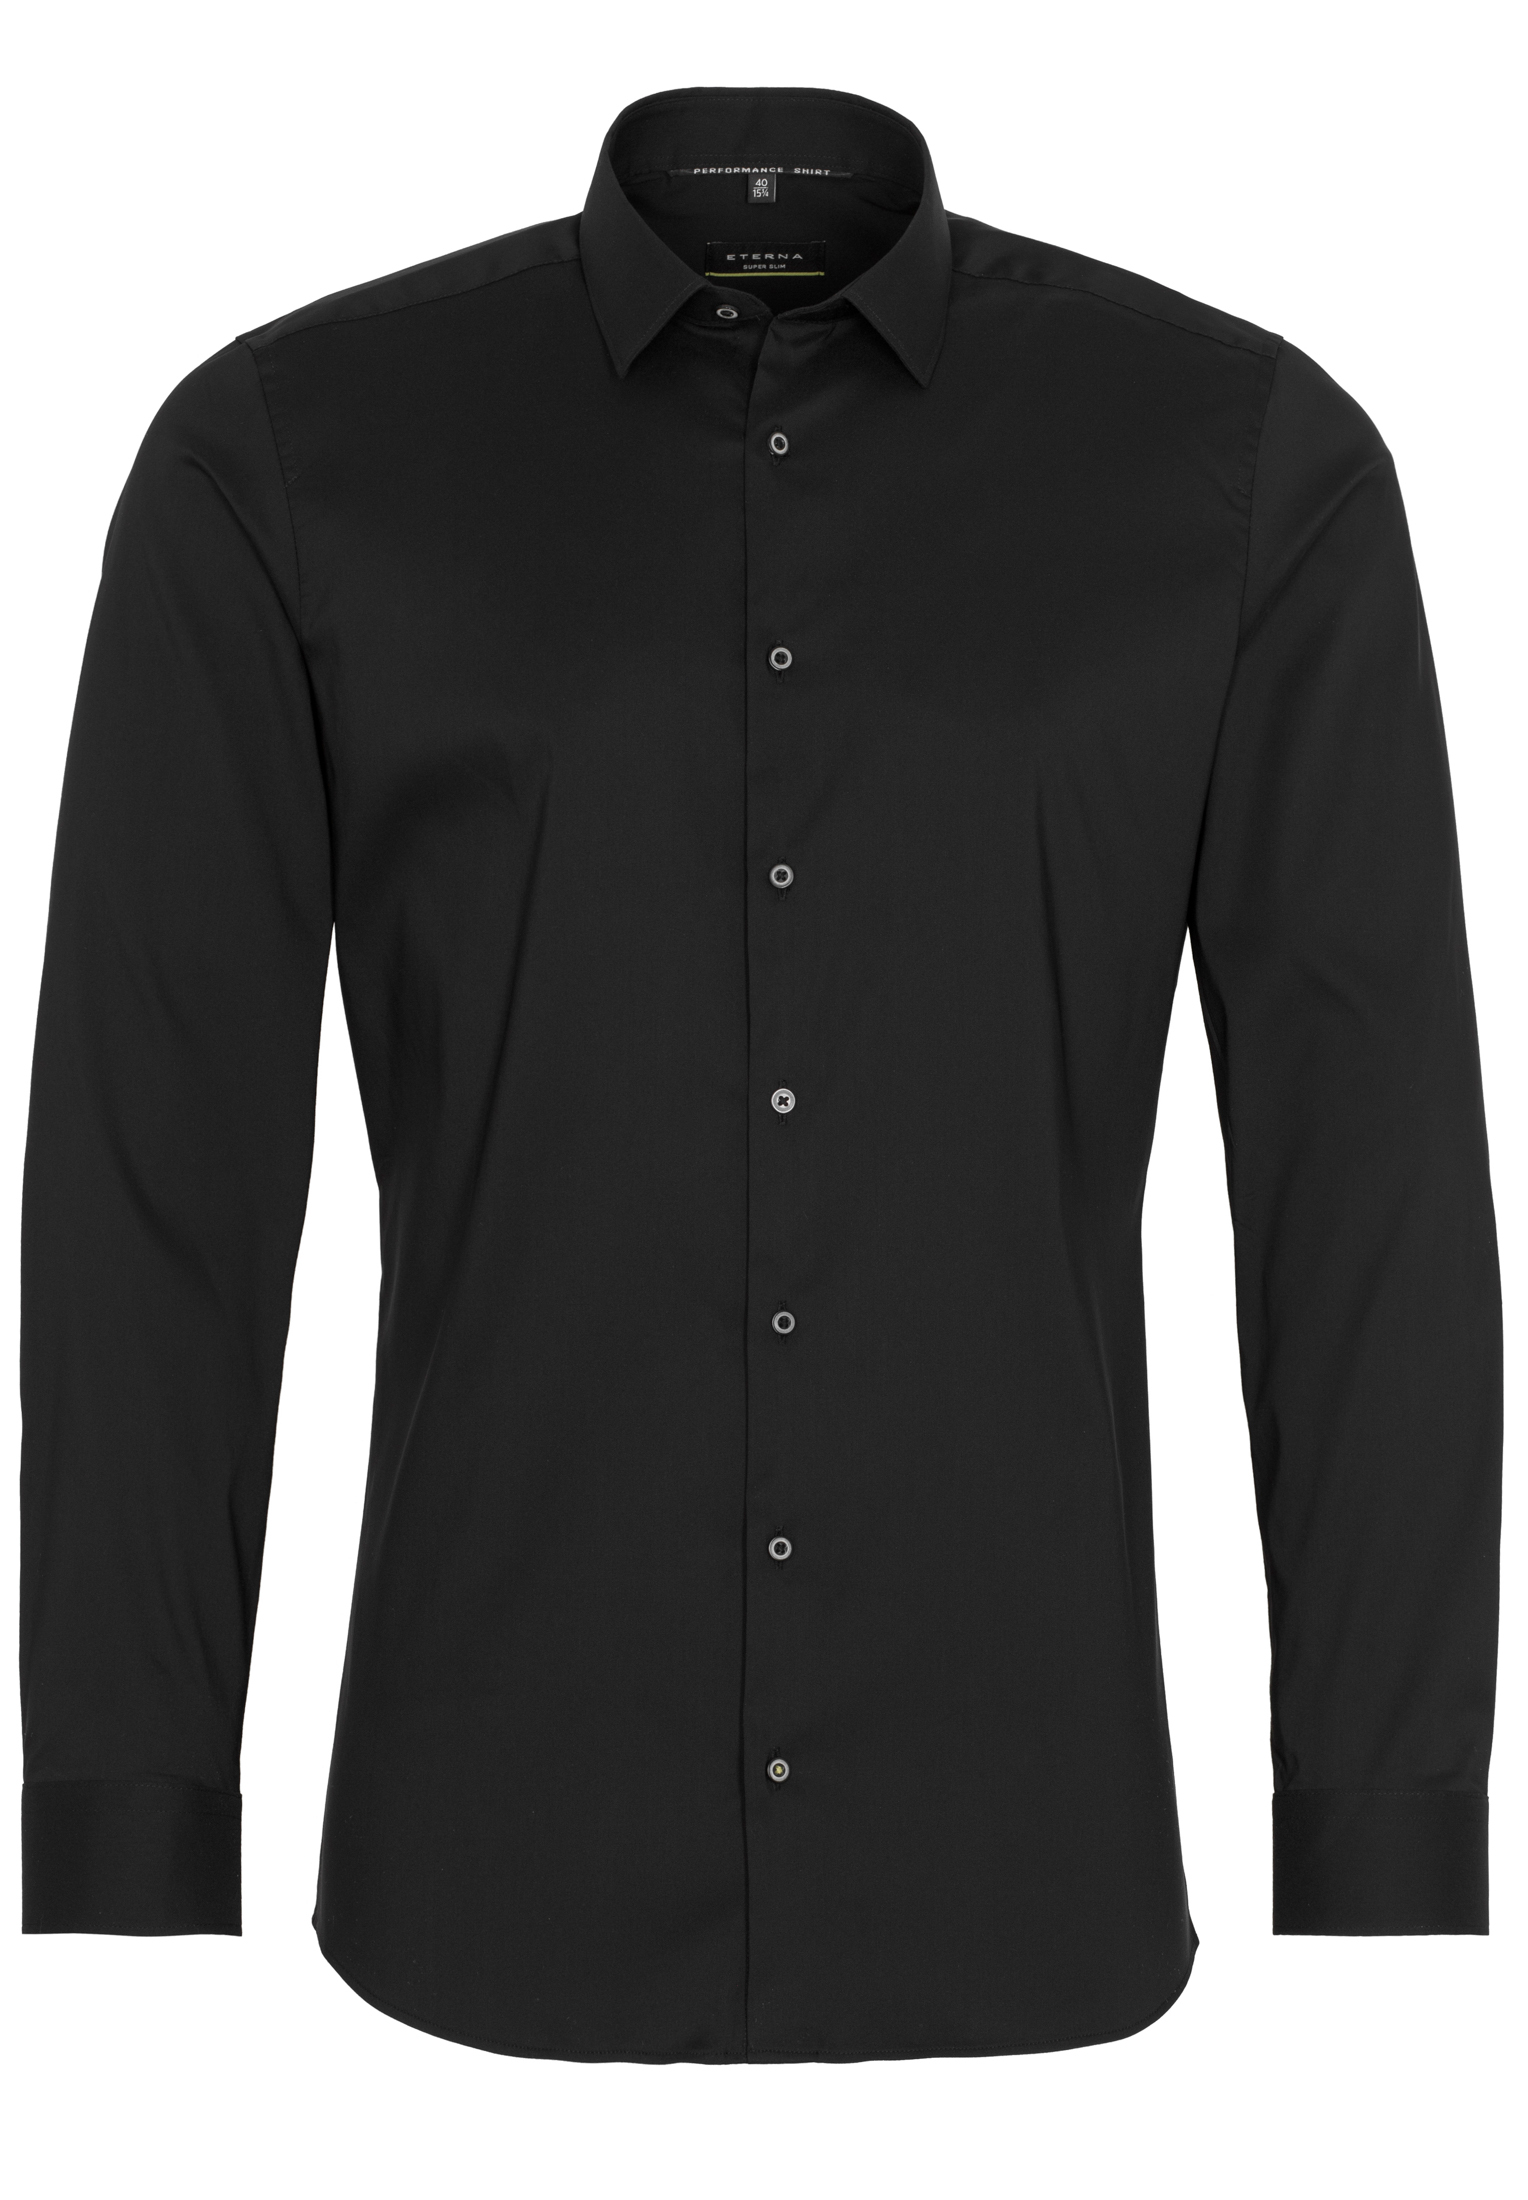 SUPER SLIM Performance Shirt in schwarz unifarben